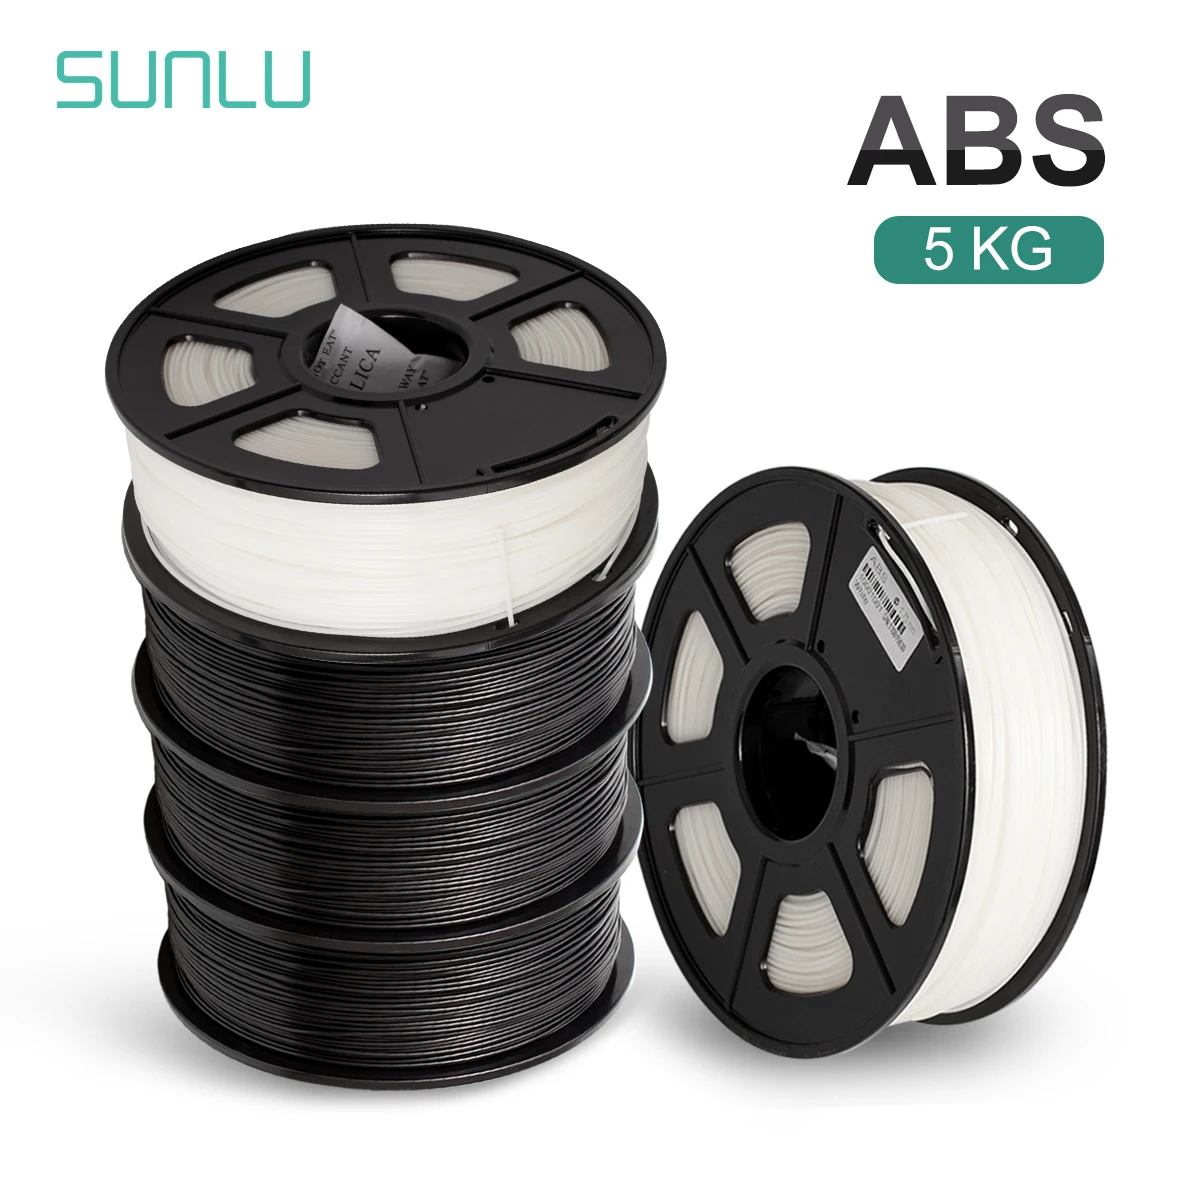 

Нить для 3D-принтера SUNLU, 1,75 мм, 1 кг, 5 рулонов, черно-белая ABS нить для 3d-печати, материал для 3d-печати для 3D-принтера